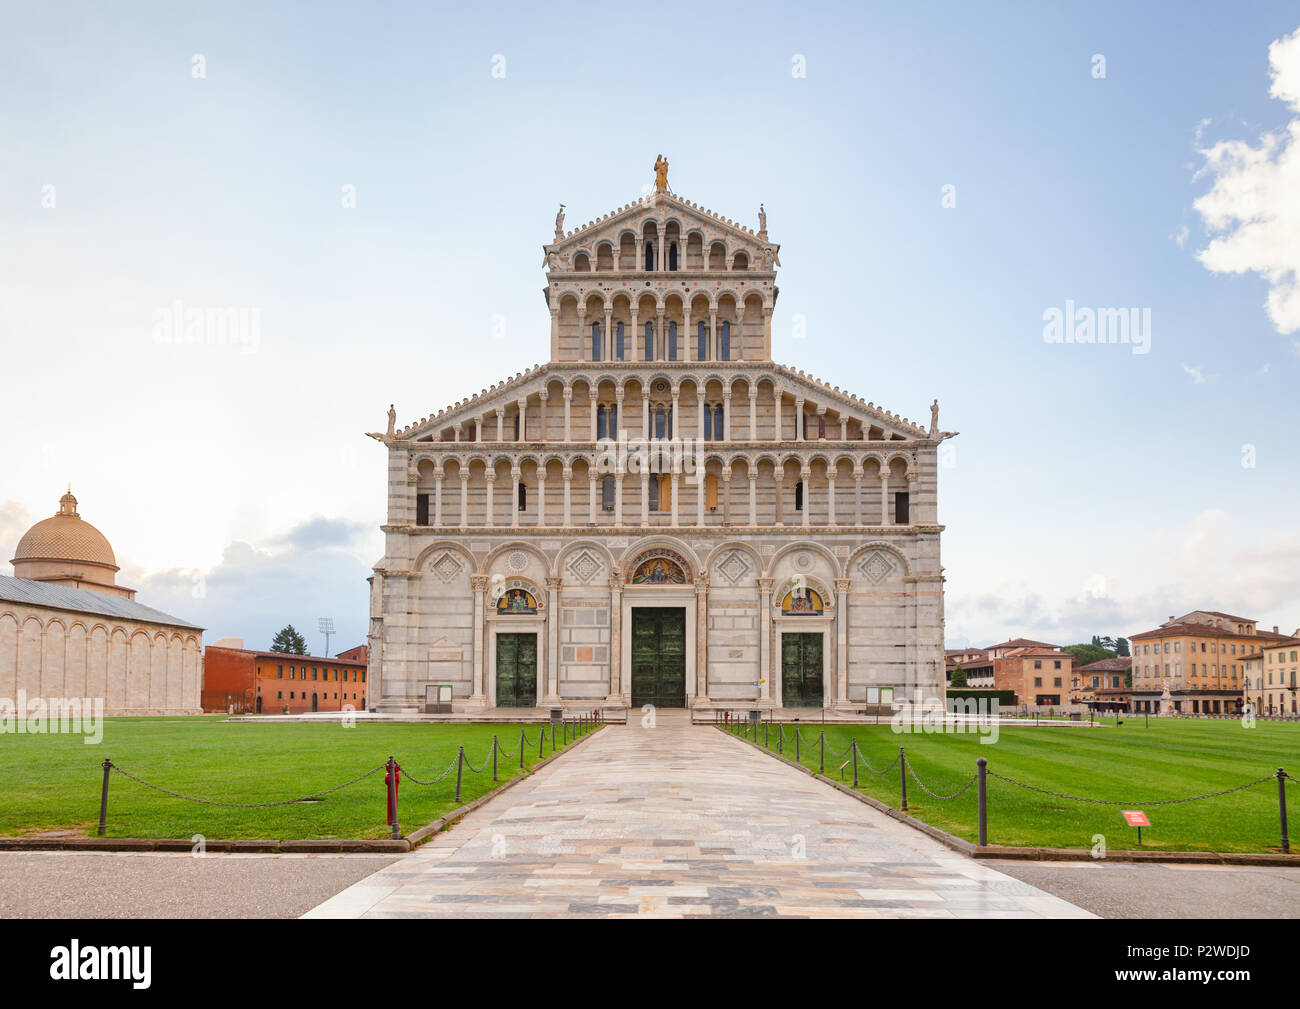 Pisana románico de la fachada de la Catedral de Pisa católica romana medieval en la Piazza dei Miracoli (Plaza de Los Milagros) o de la Piazza del Duomo (catedral), Cuadrado Foto de stock